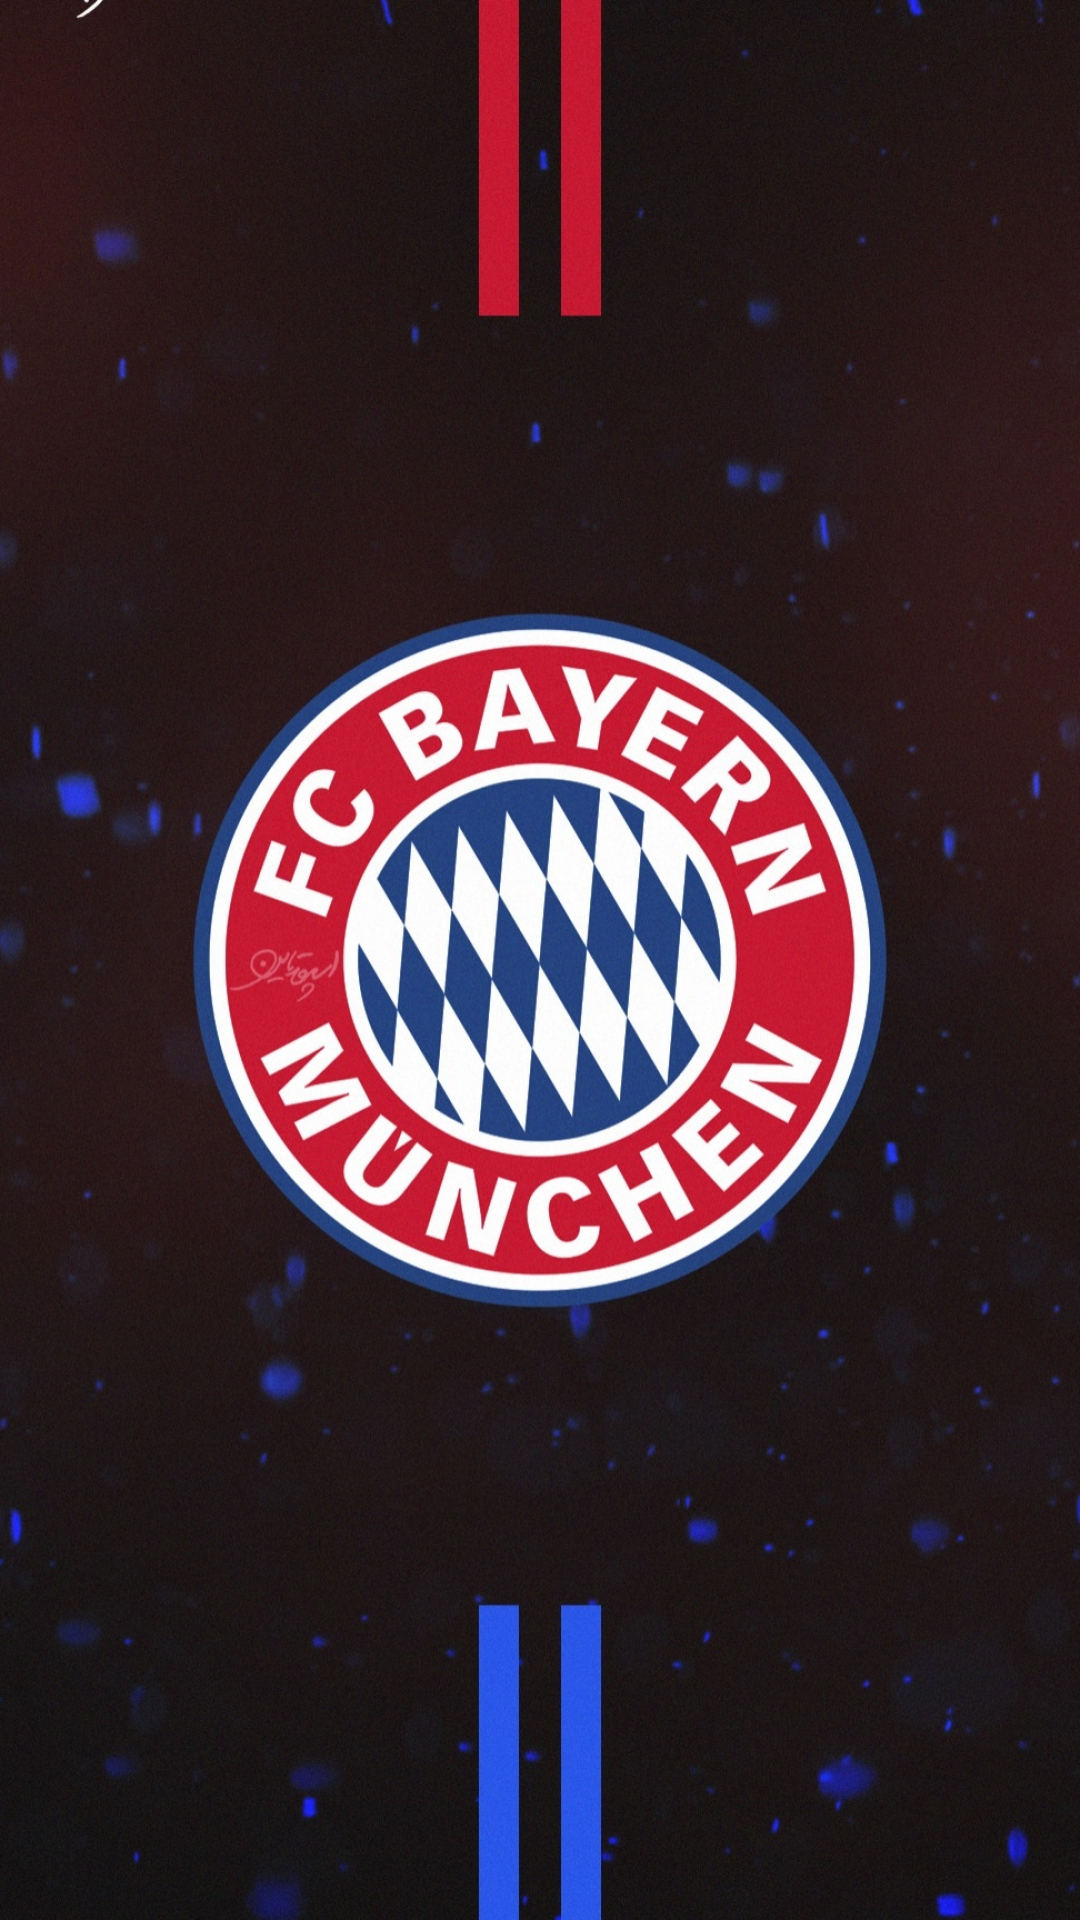 Bayern Munchen FC: A team from the German region Bavaria, Emblem. 1080x1920 Full HD Background.